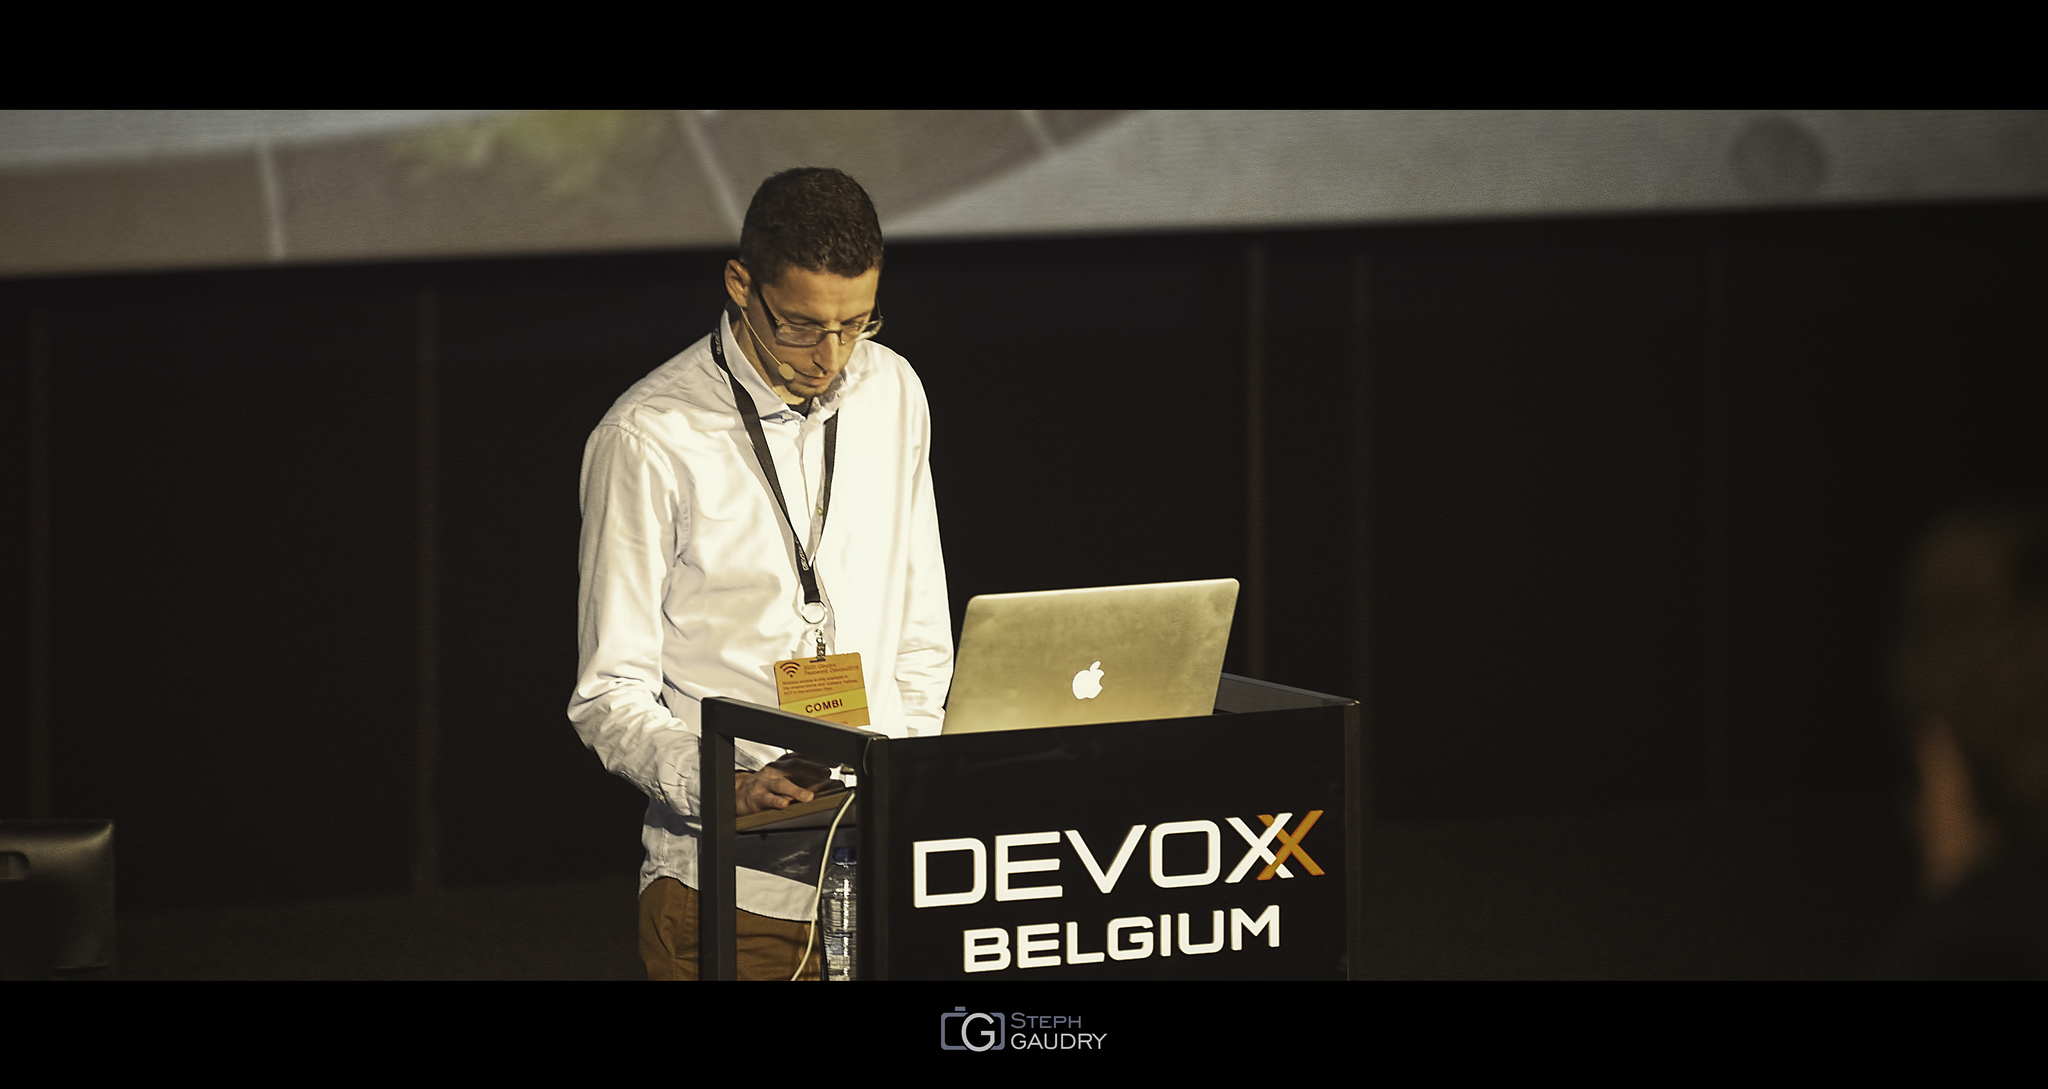 Tom Vleminckx @ Devoxx2015 - JMH [Klicken Sie hier, um die Diashow zu starten]